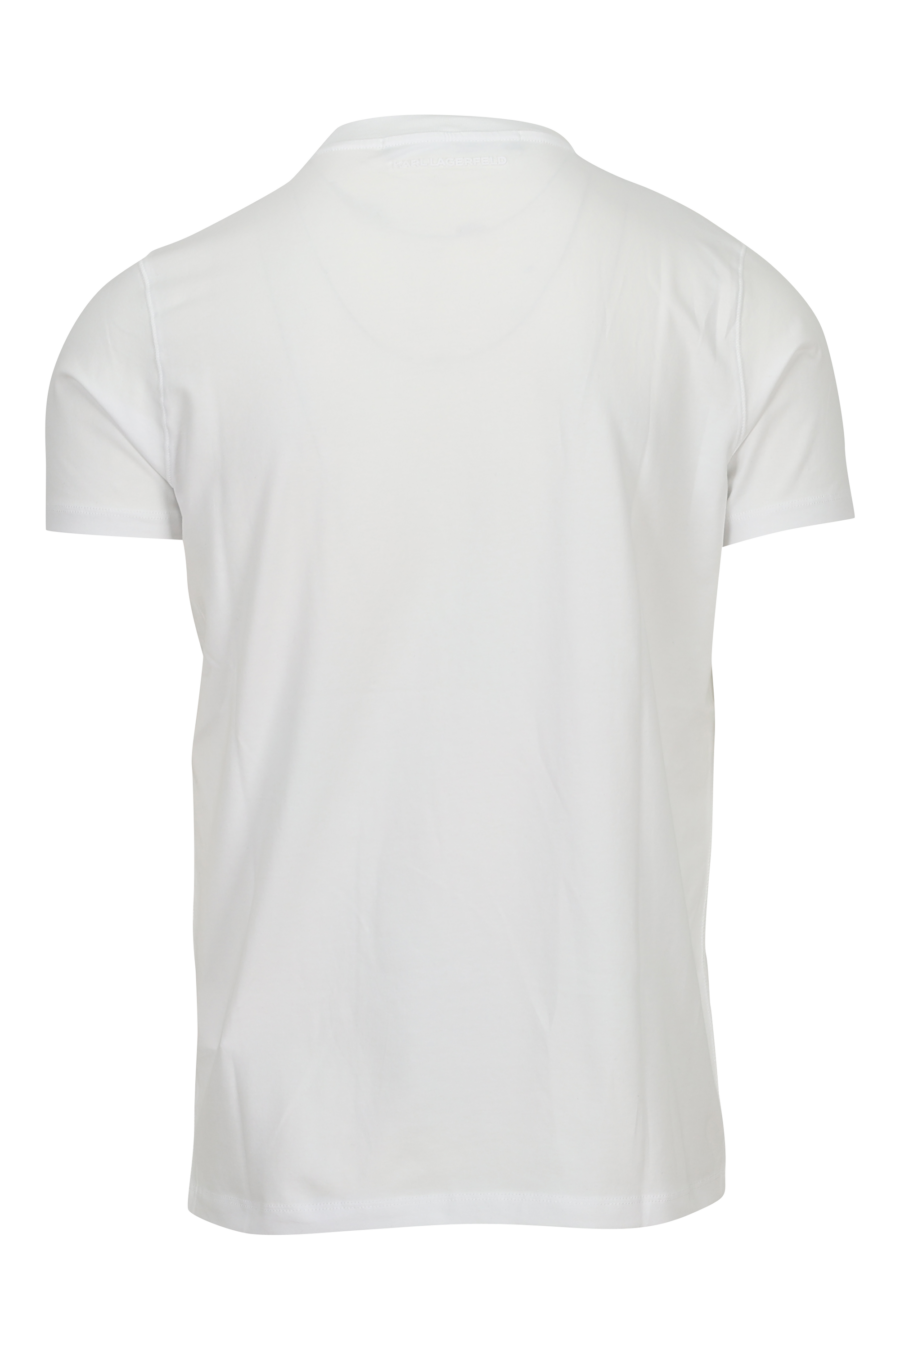 Camiseta blanca con maxilogo de goma en degradé - 4062226788984 1